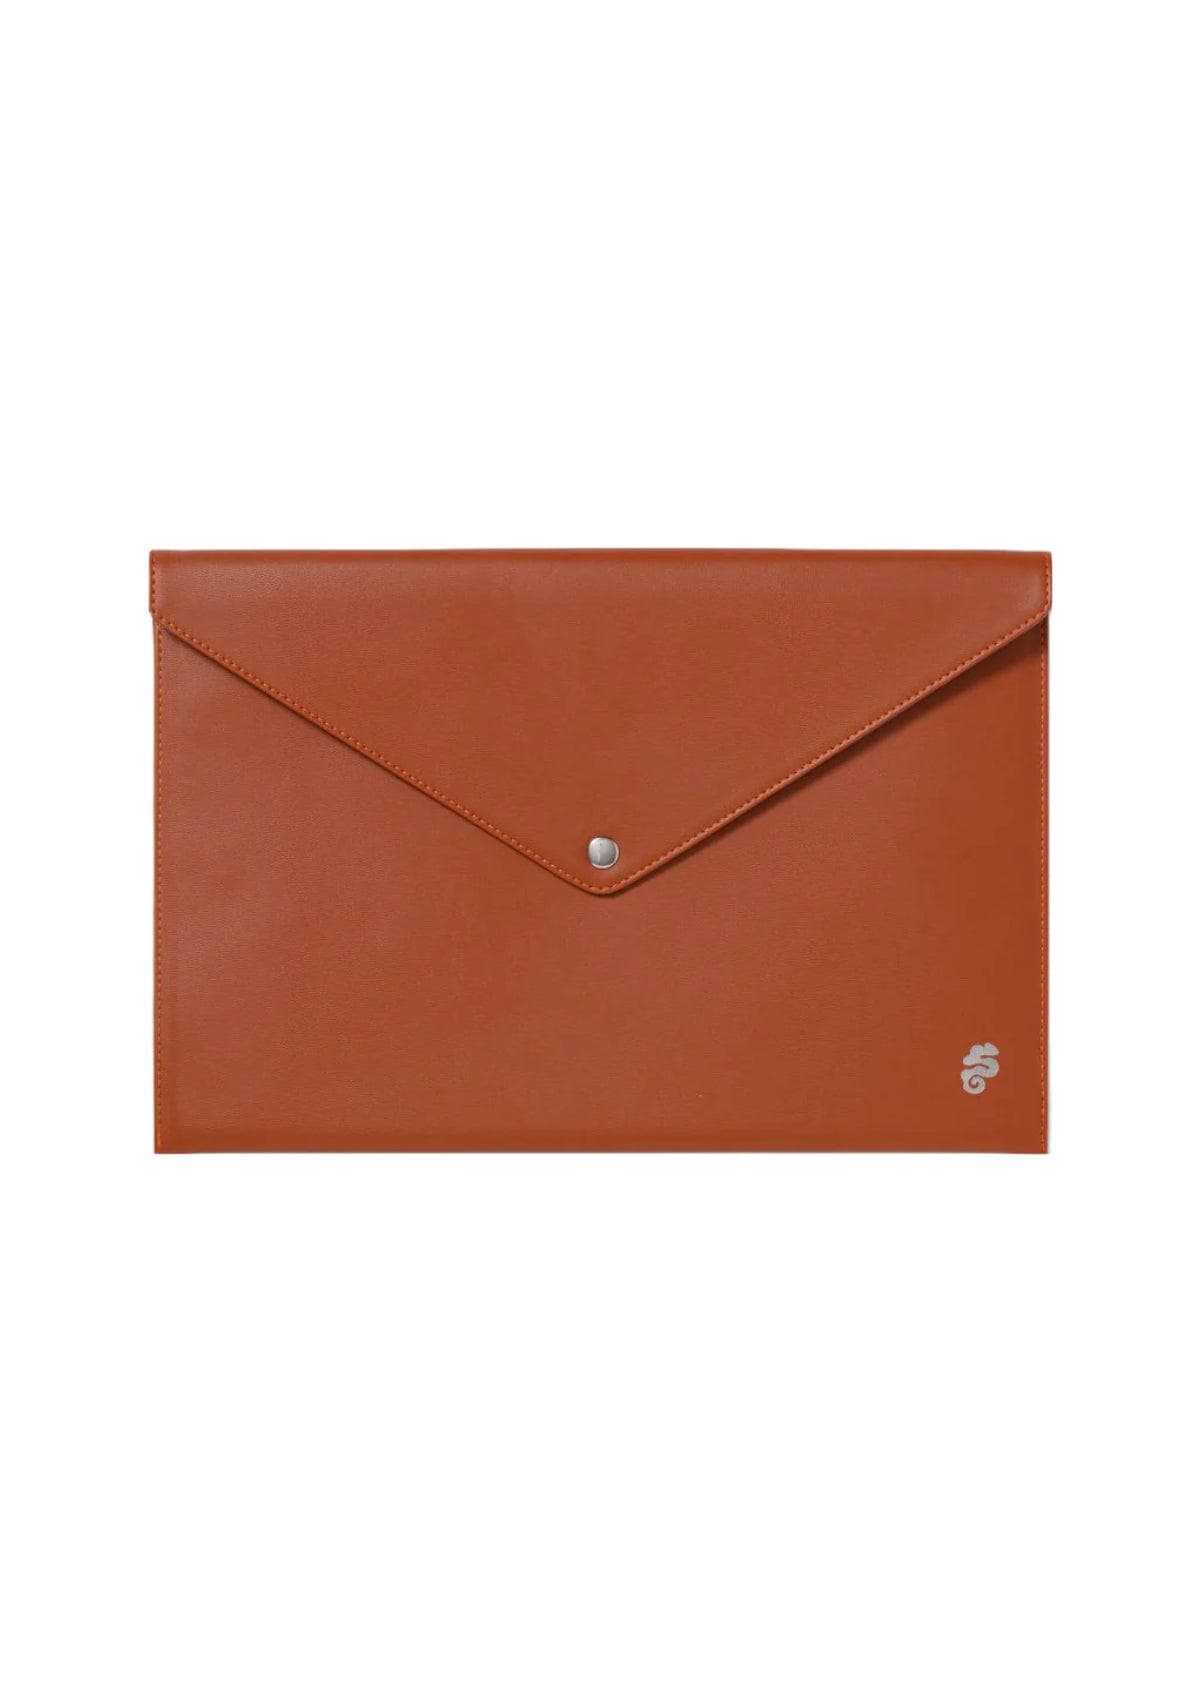 Sarelly Envelope Portalaptop - Brown